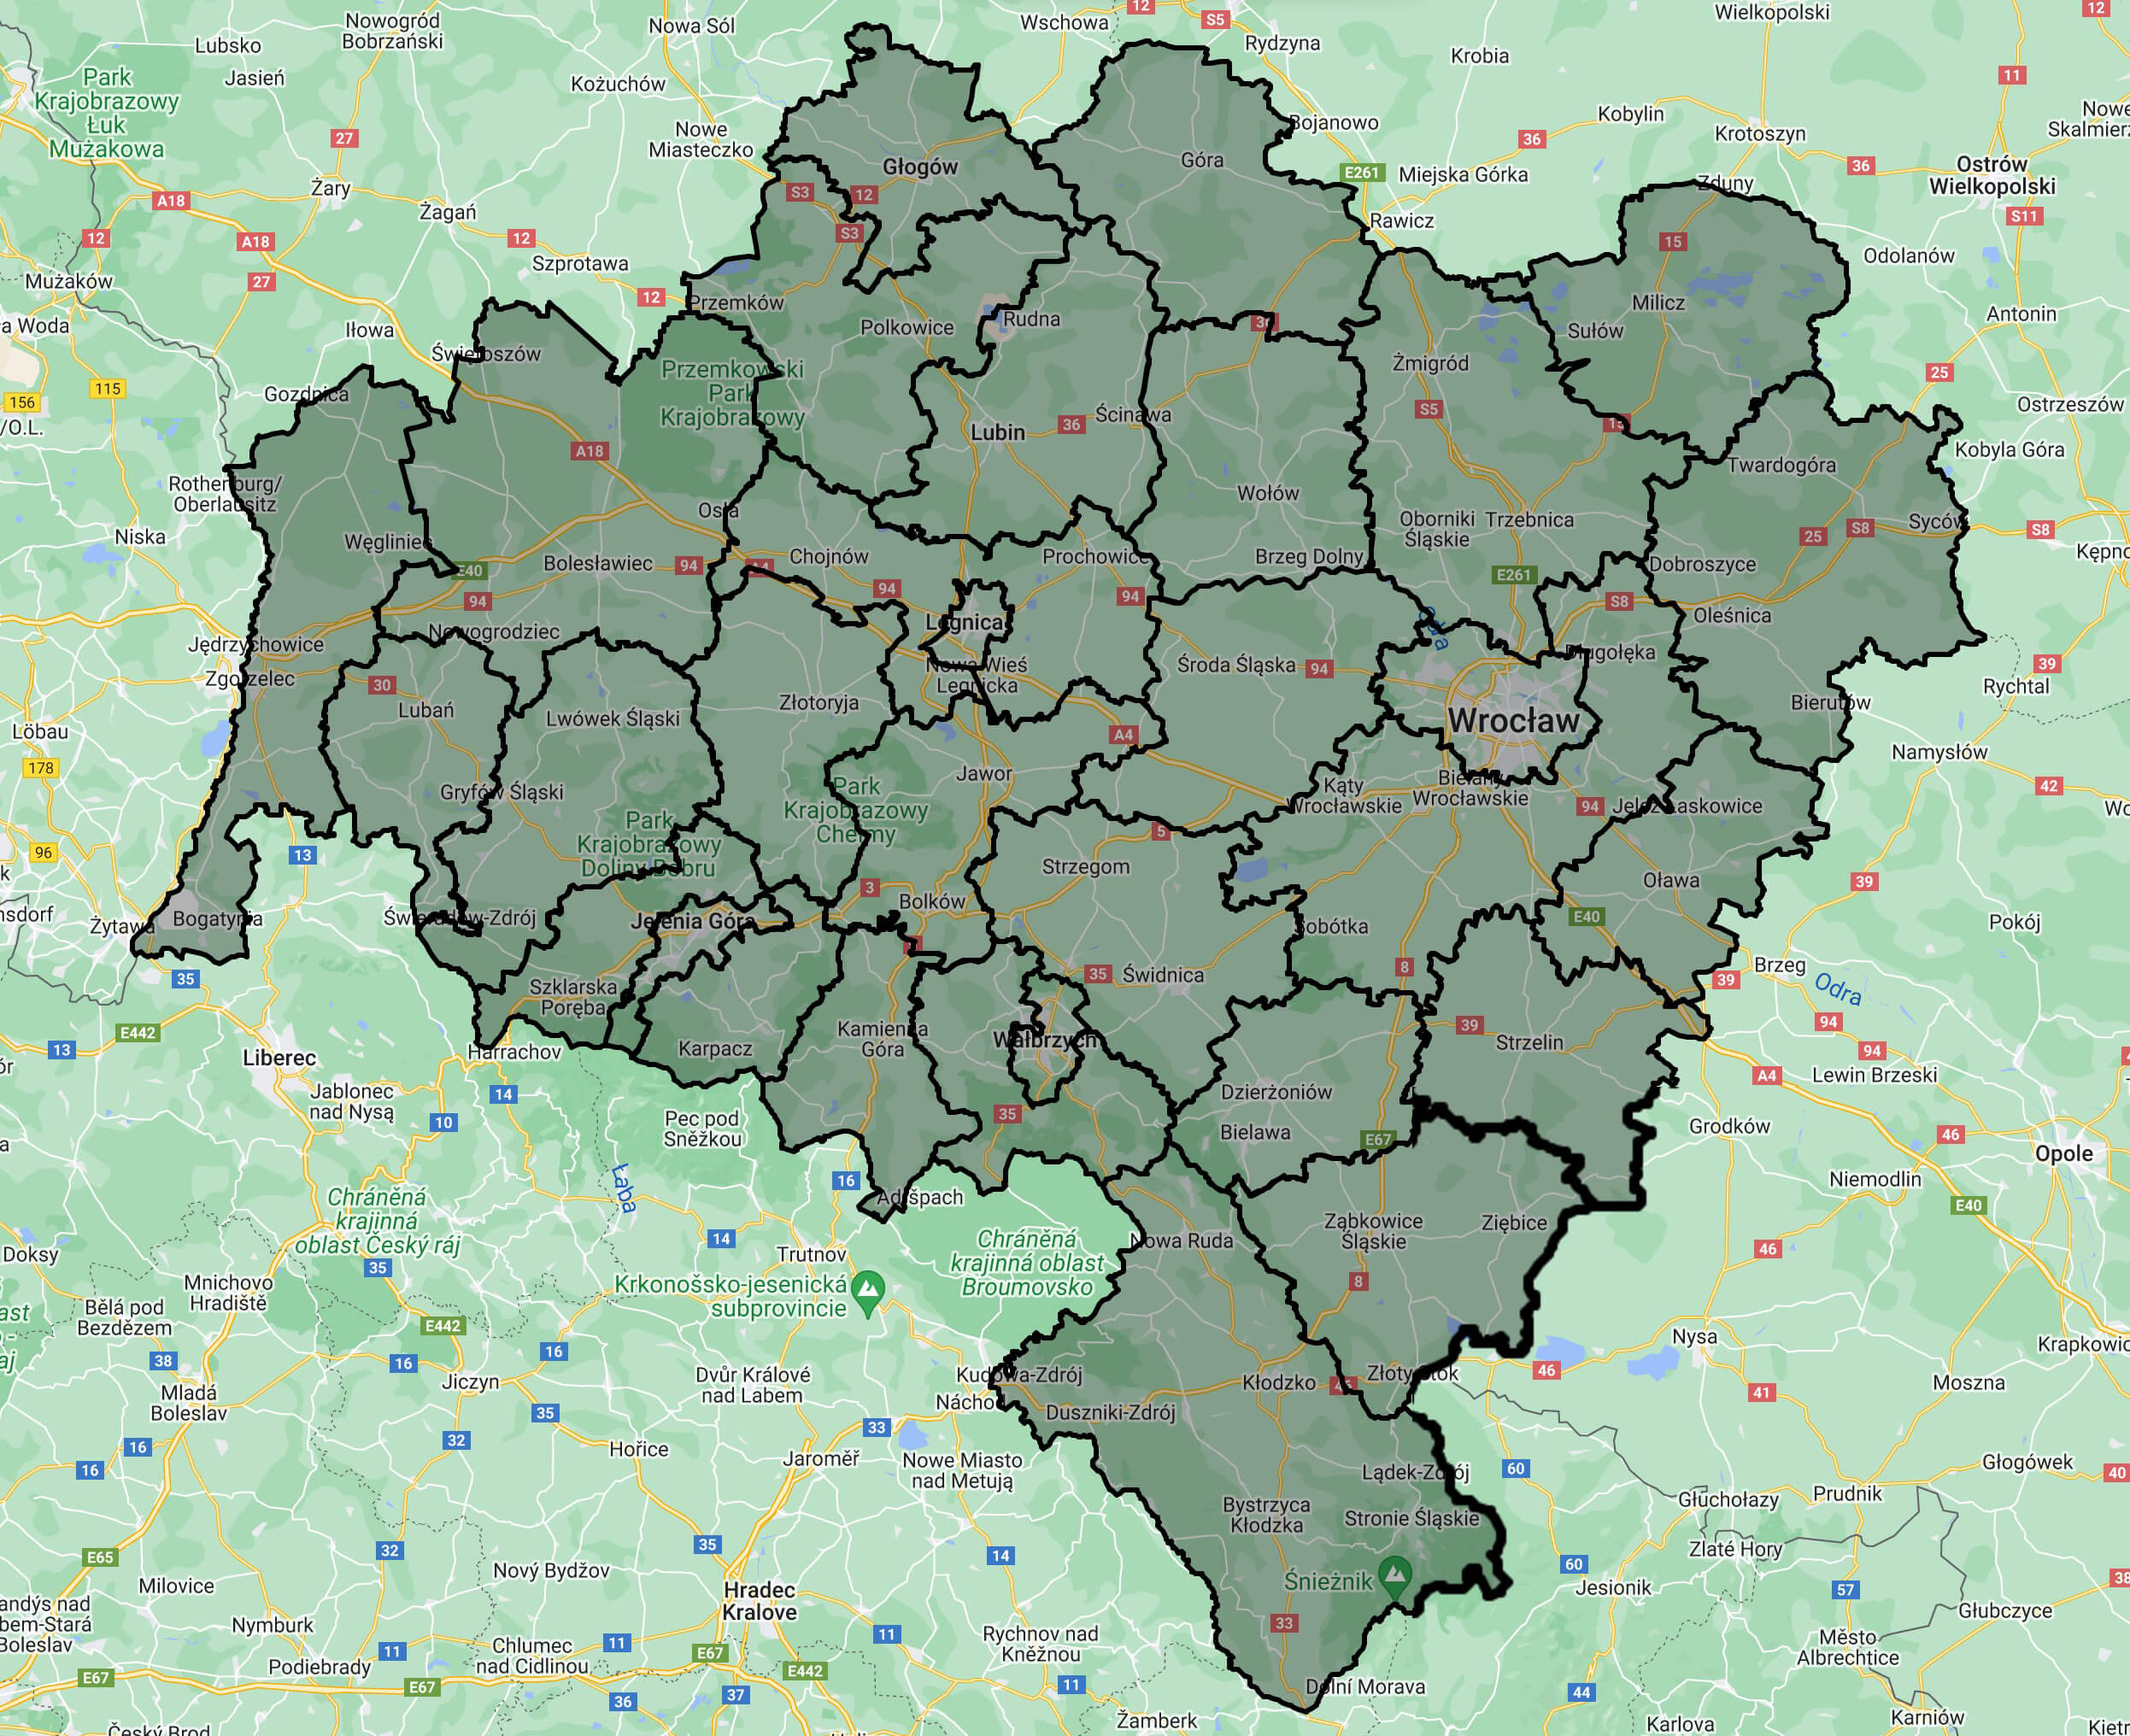 Obraz przedstawia mapę drogową Dolnego Śląska, z zaznaczonymi konturami powiatów